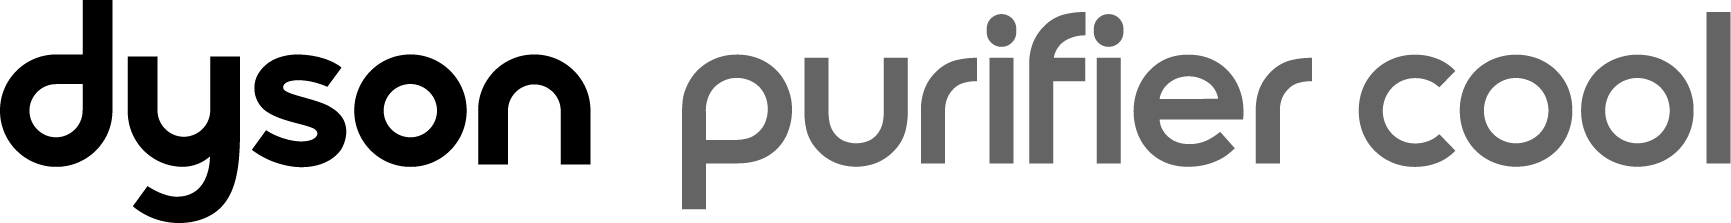 Logo do produto Dyson Purifier Cool